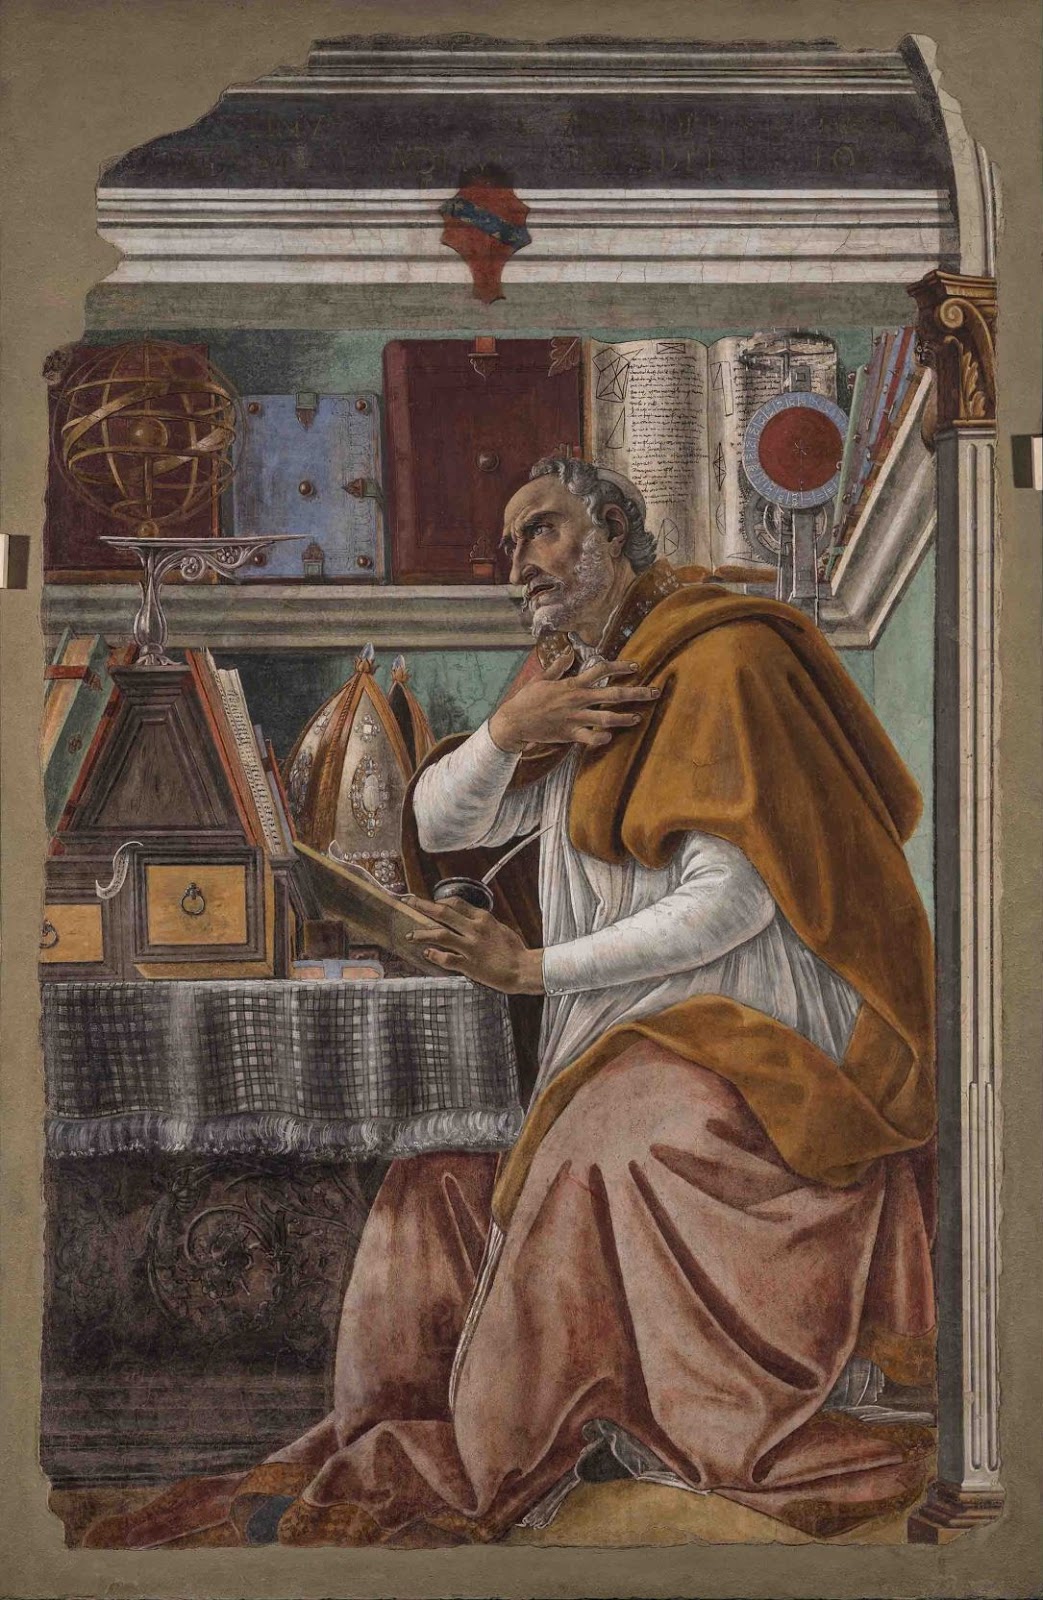 Sandro+Botticelli-1445-1510 (100).jpg